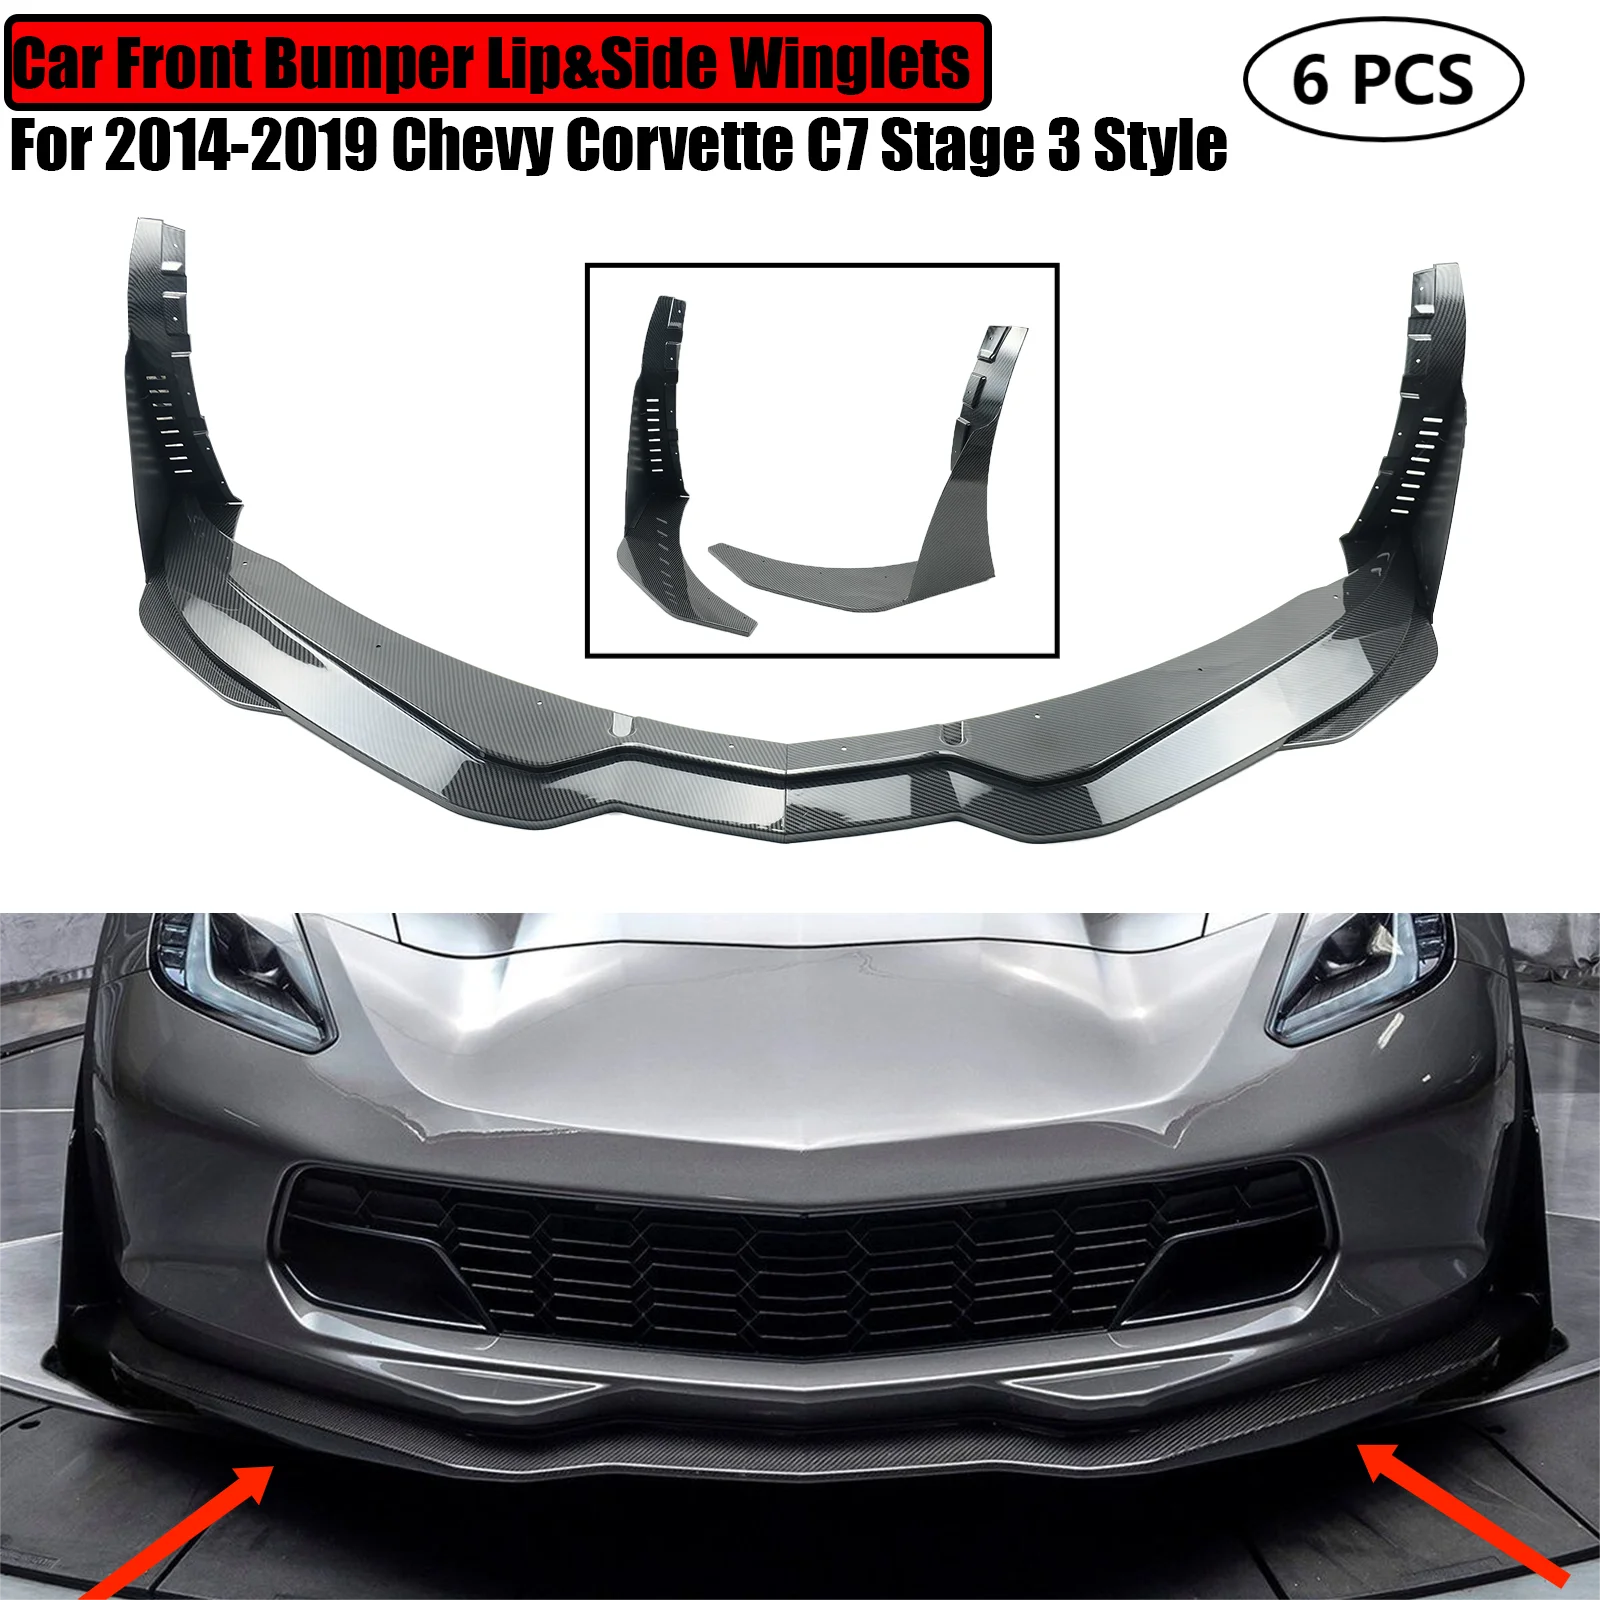 

Автомобильный передний бампер губа и боковые крылья спойлер сплиттер углеродный вид глянцевый матовый черный для 2014-2019 Chevy Corvette C7 этап 3 стиль